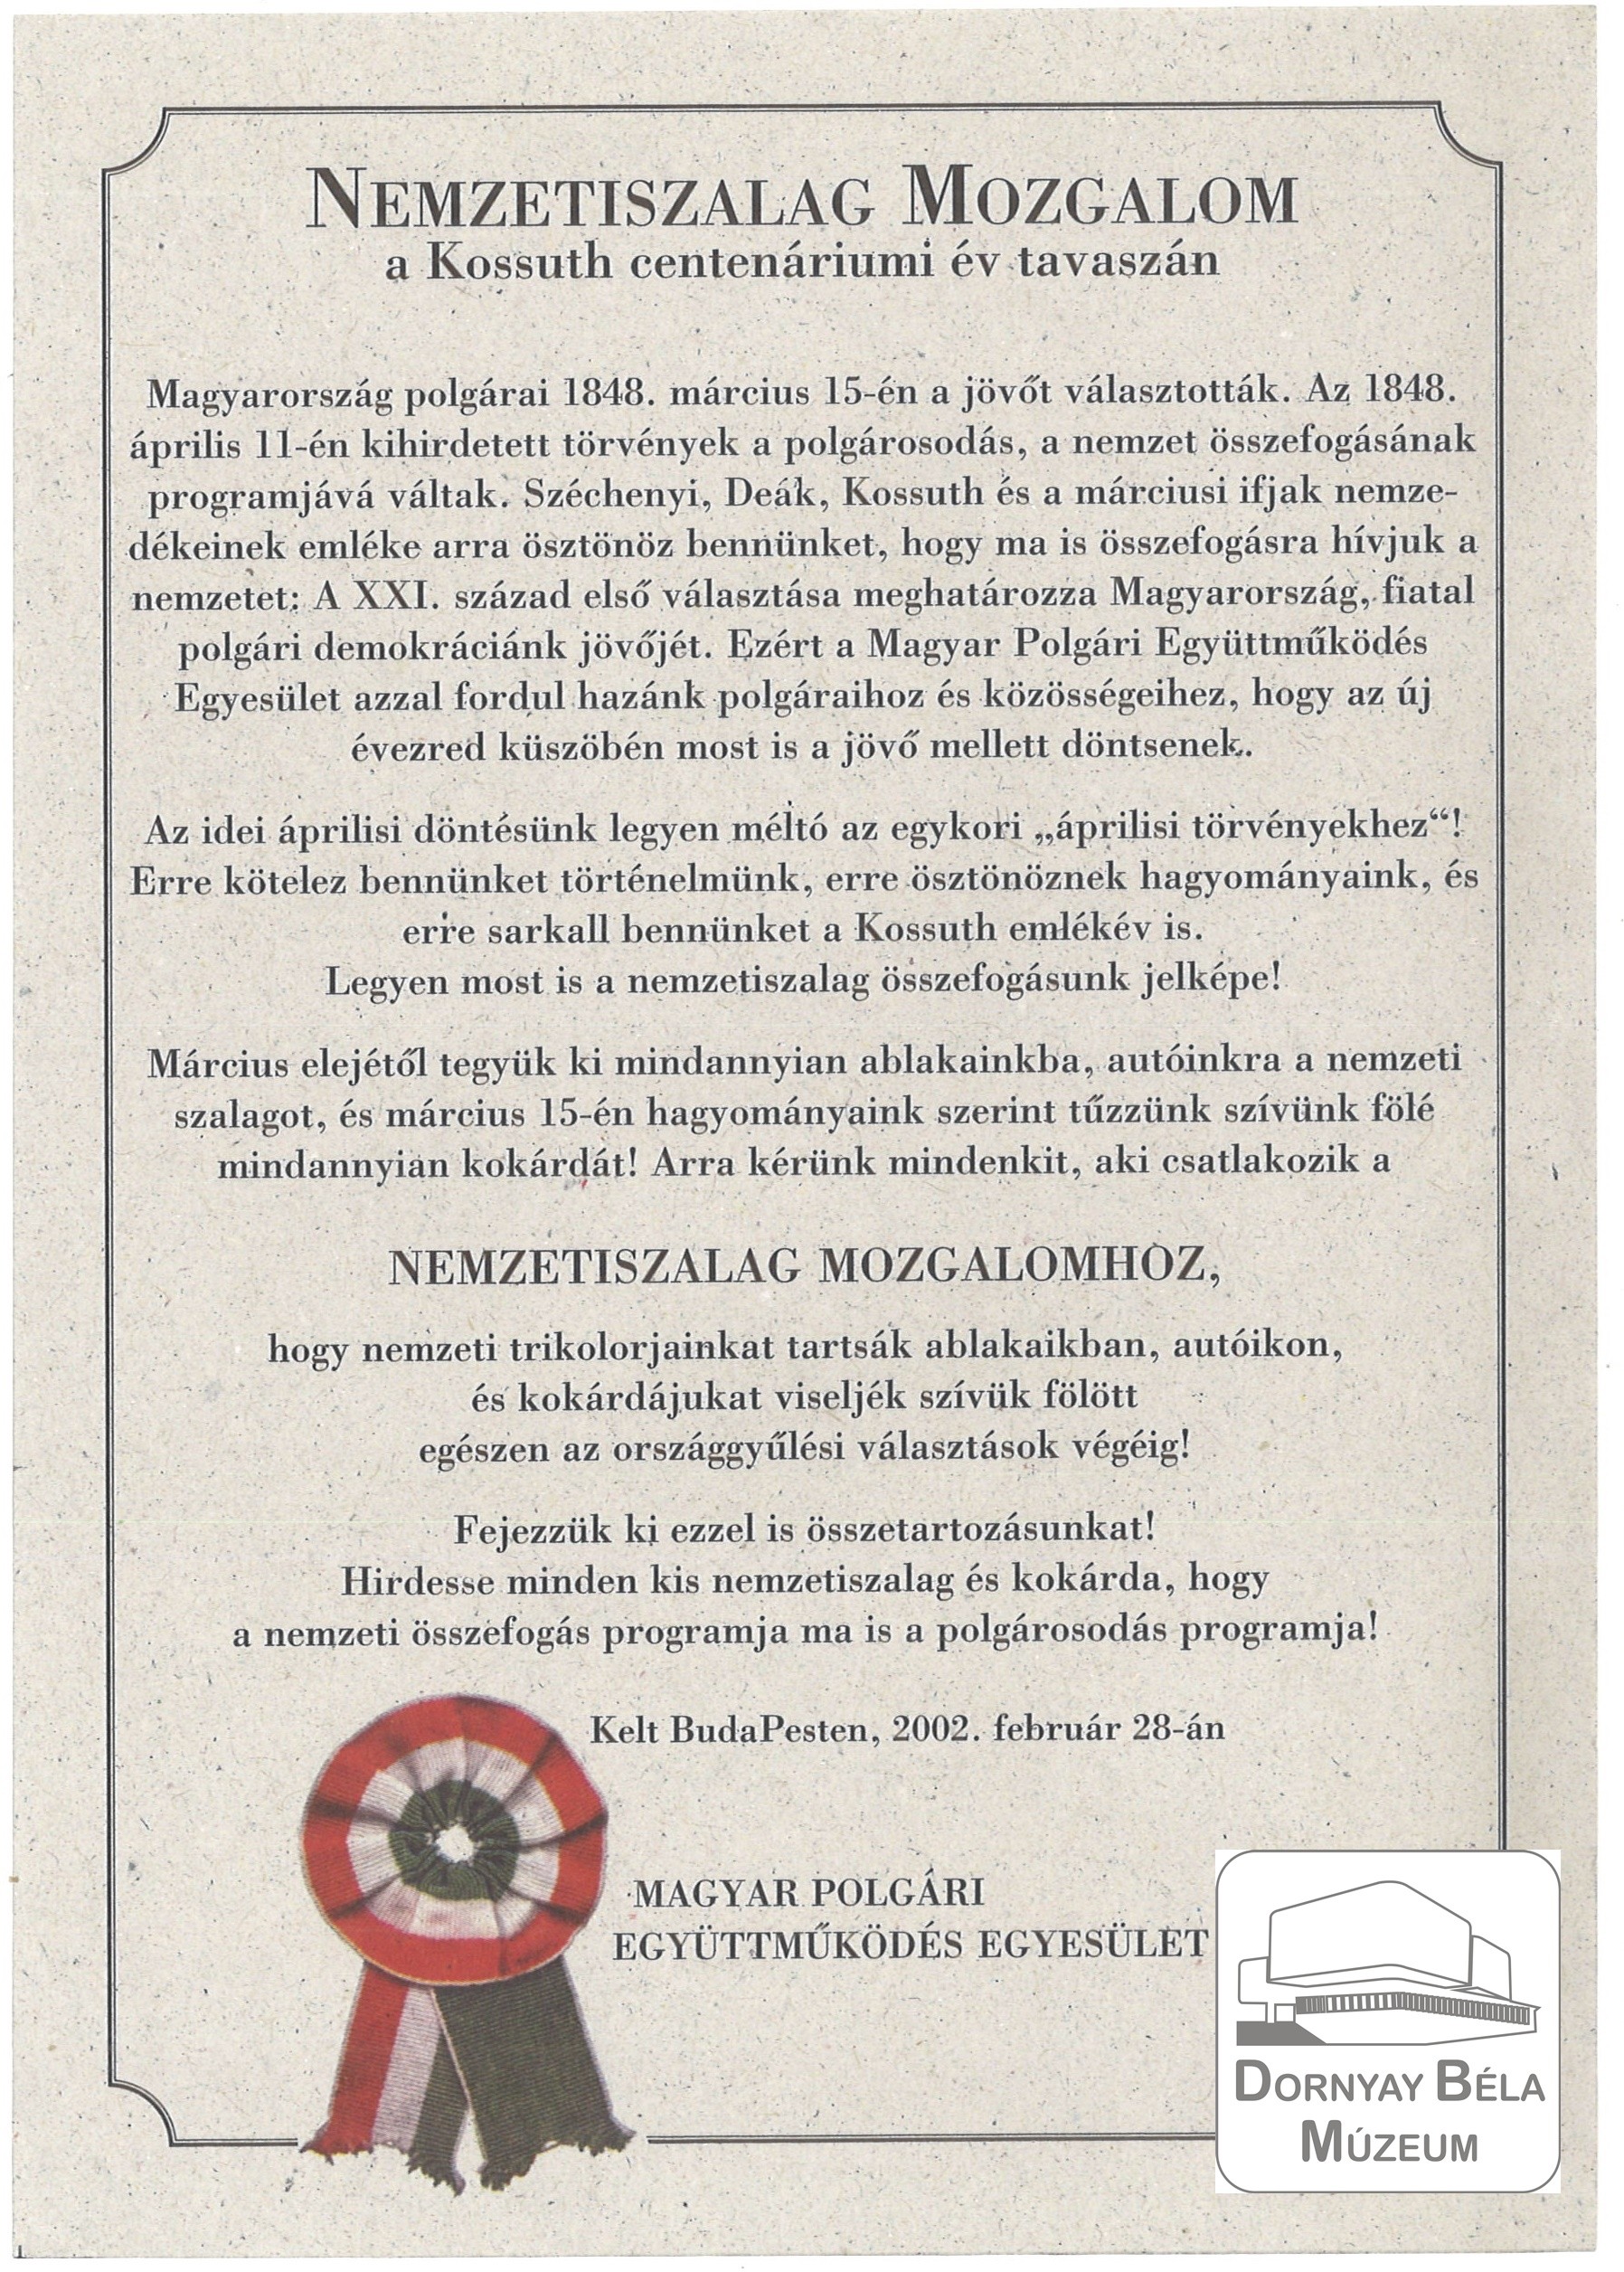 Nemzetiszalag Mozgalom. A Magyar Polgári Együttműködés Egyesület választásokig való kokárda viselésre (Dornyay Béla Múzeum, Salgótarján CC BY-NC-SA)